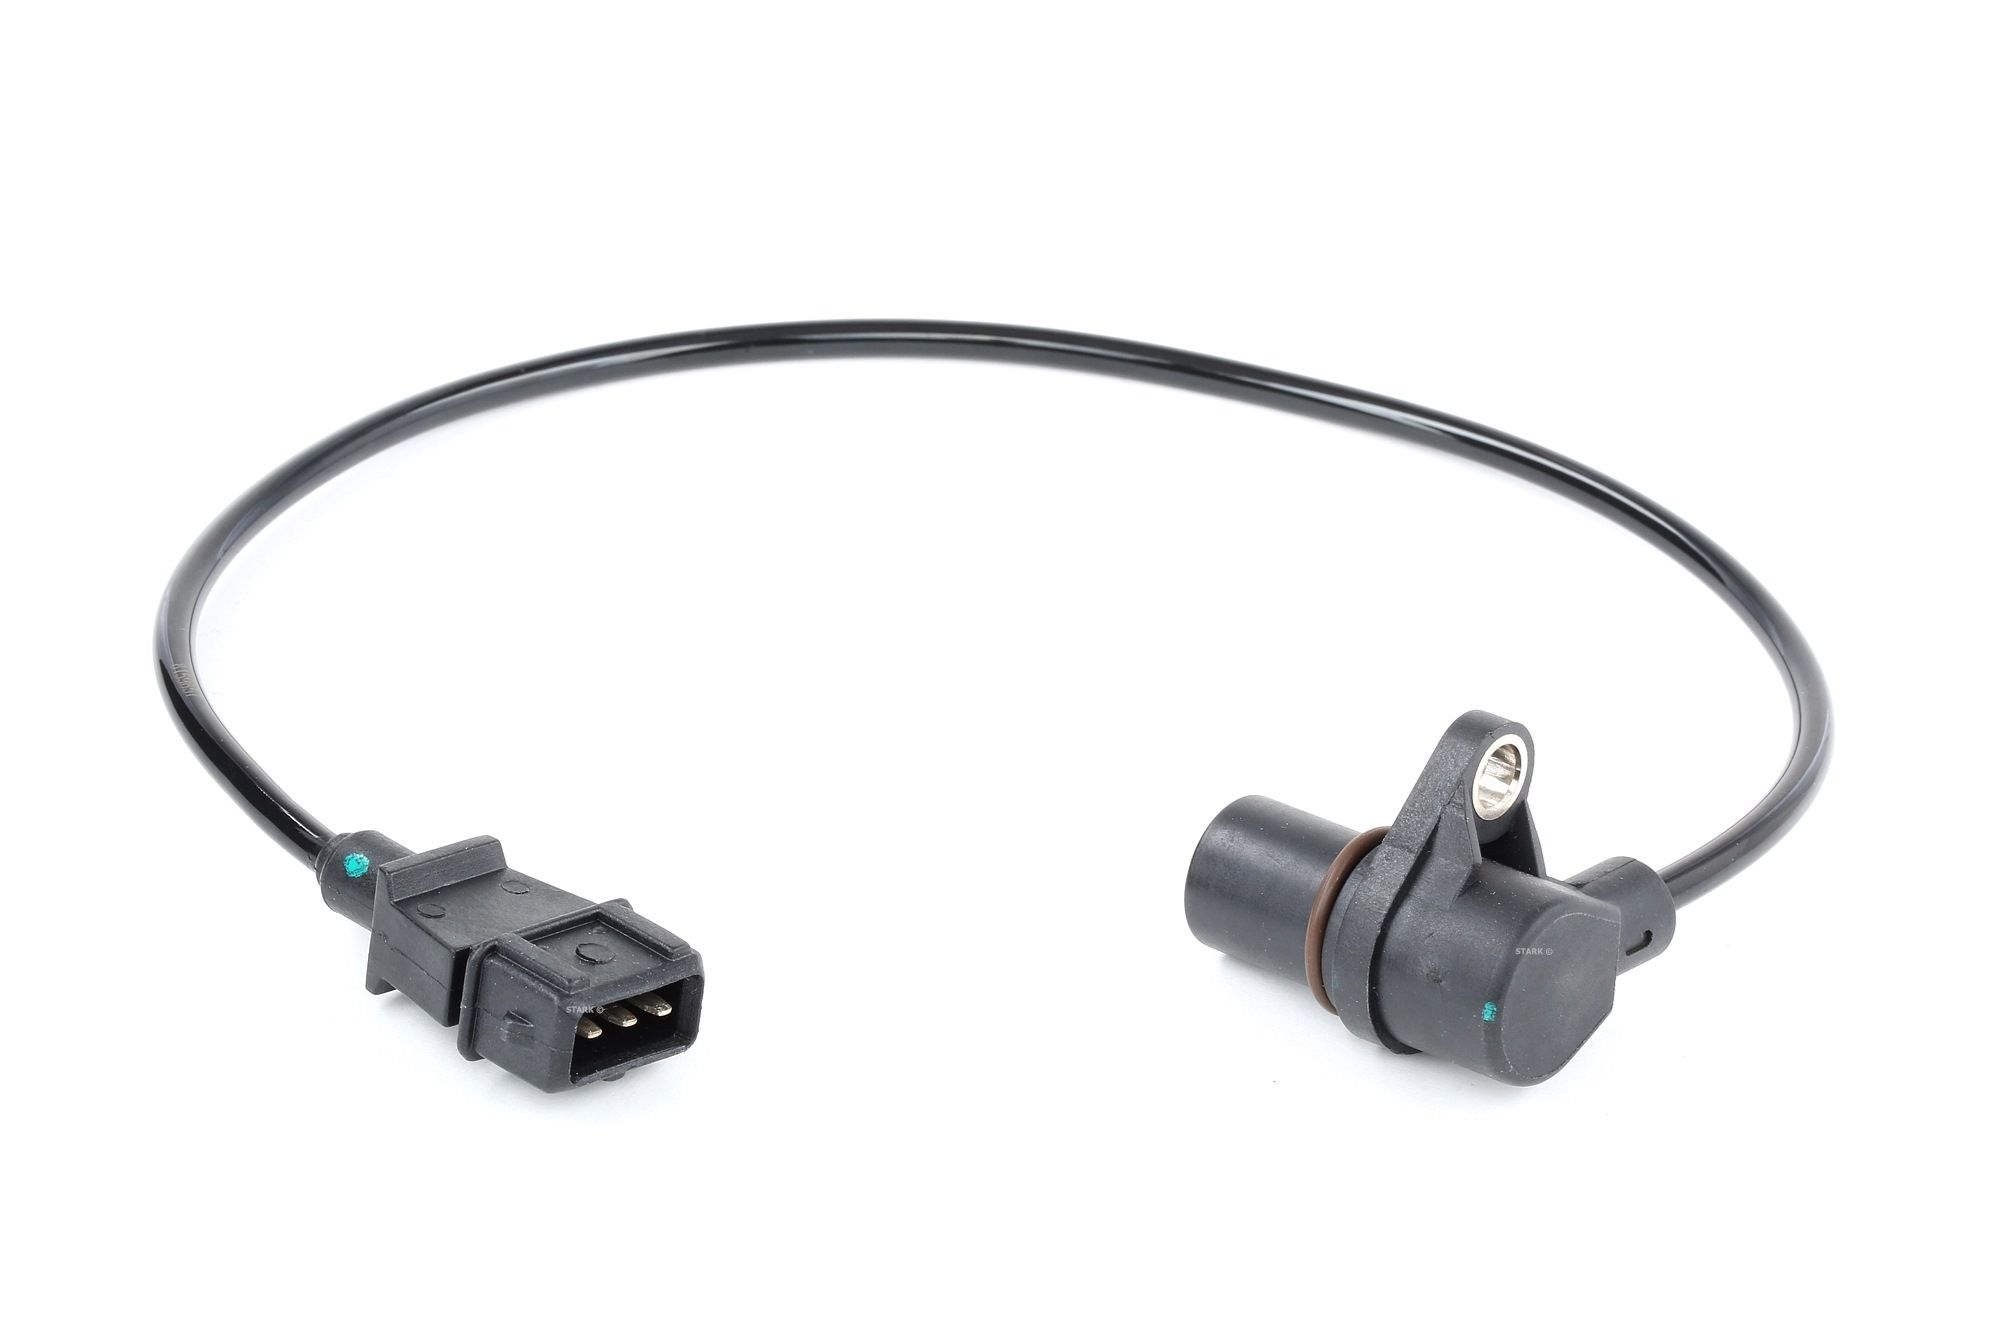 STARK SKCPS-0360099 Crankshaft sensor 3-pin connector, Inductive Sensor